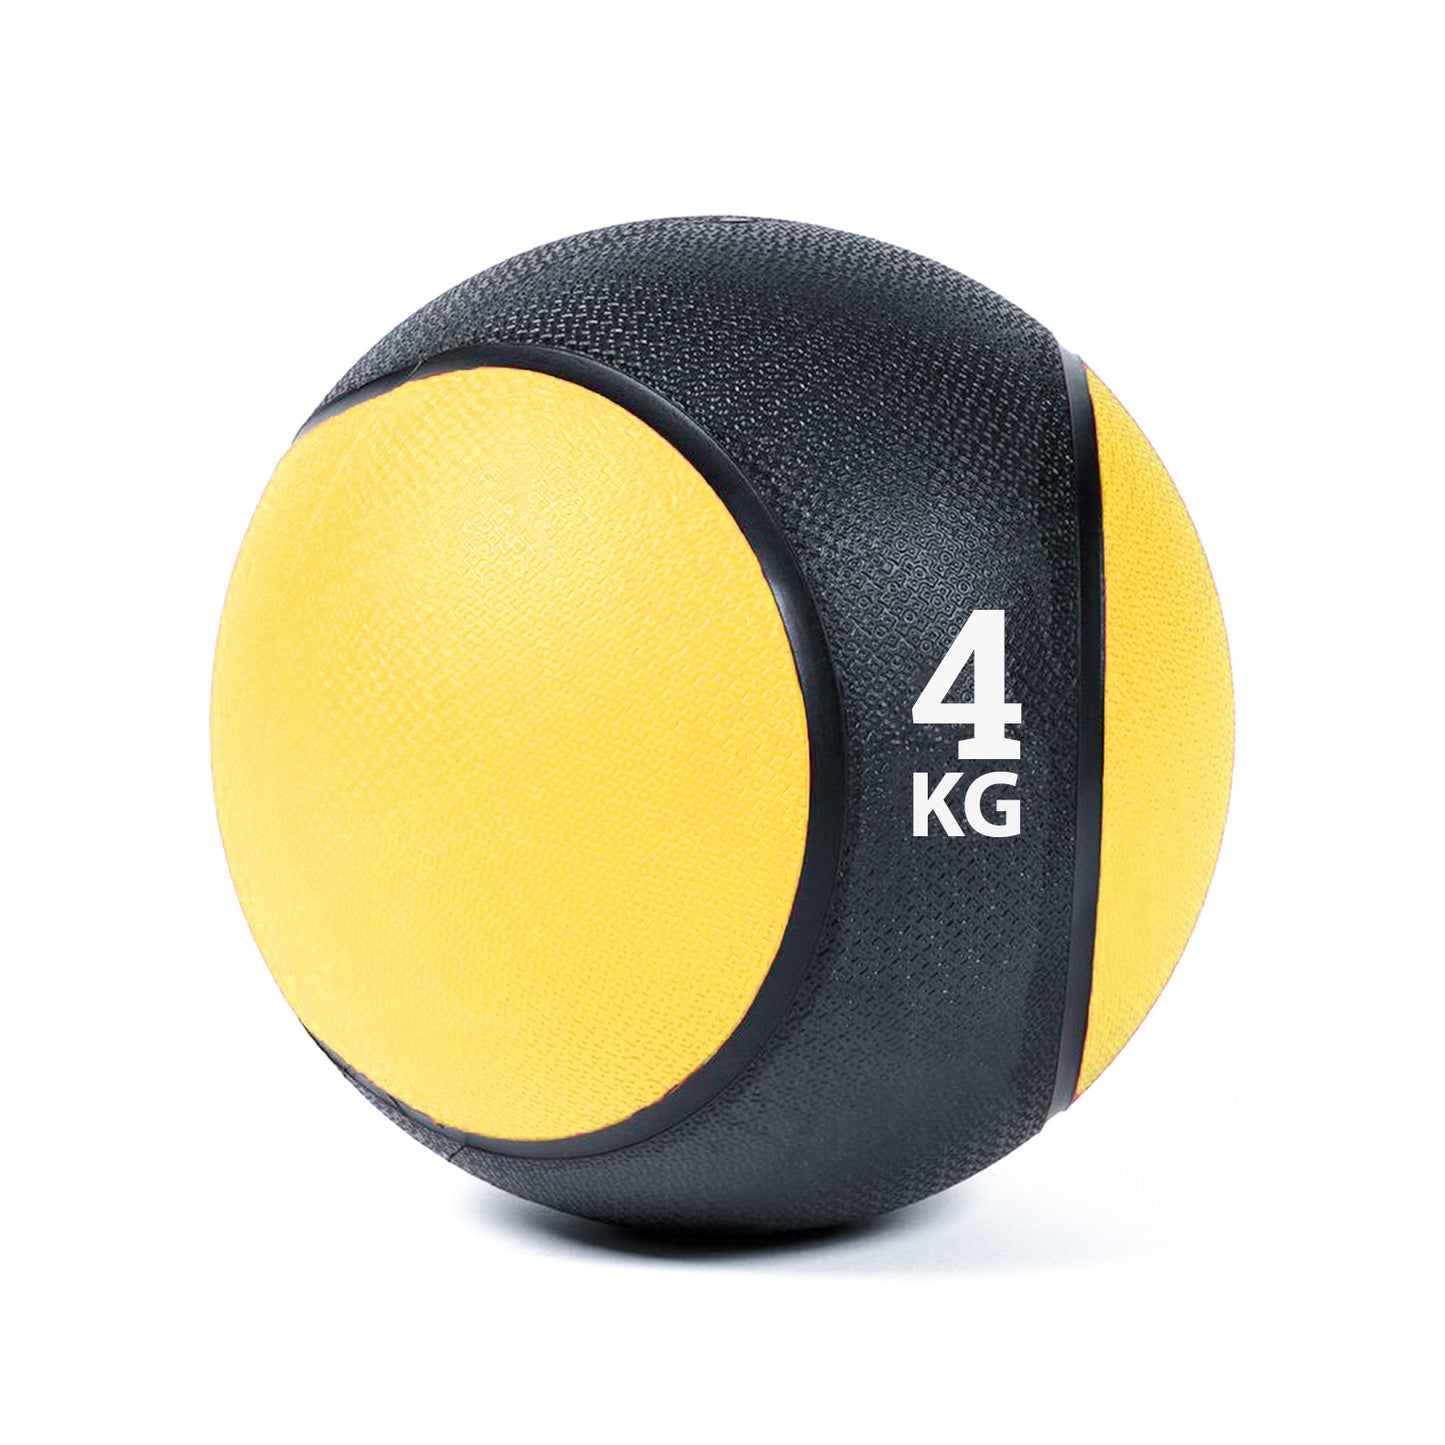 كرة طبية من المطاط لاعادة التأهيل و اللياقة البدنية - لون اسود و اصفر - وزن 4 كيلو جرام - Kanteen - كانتين